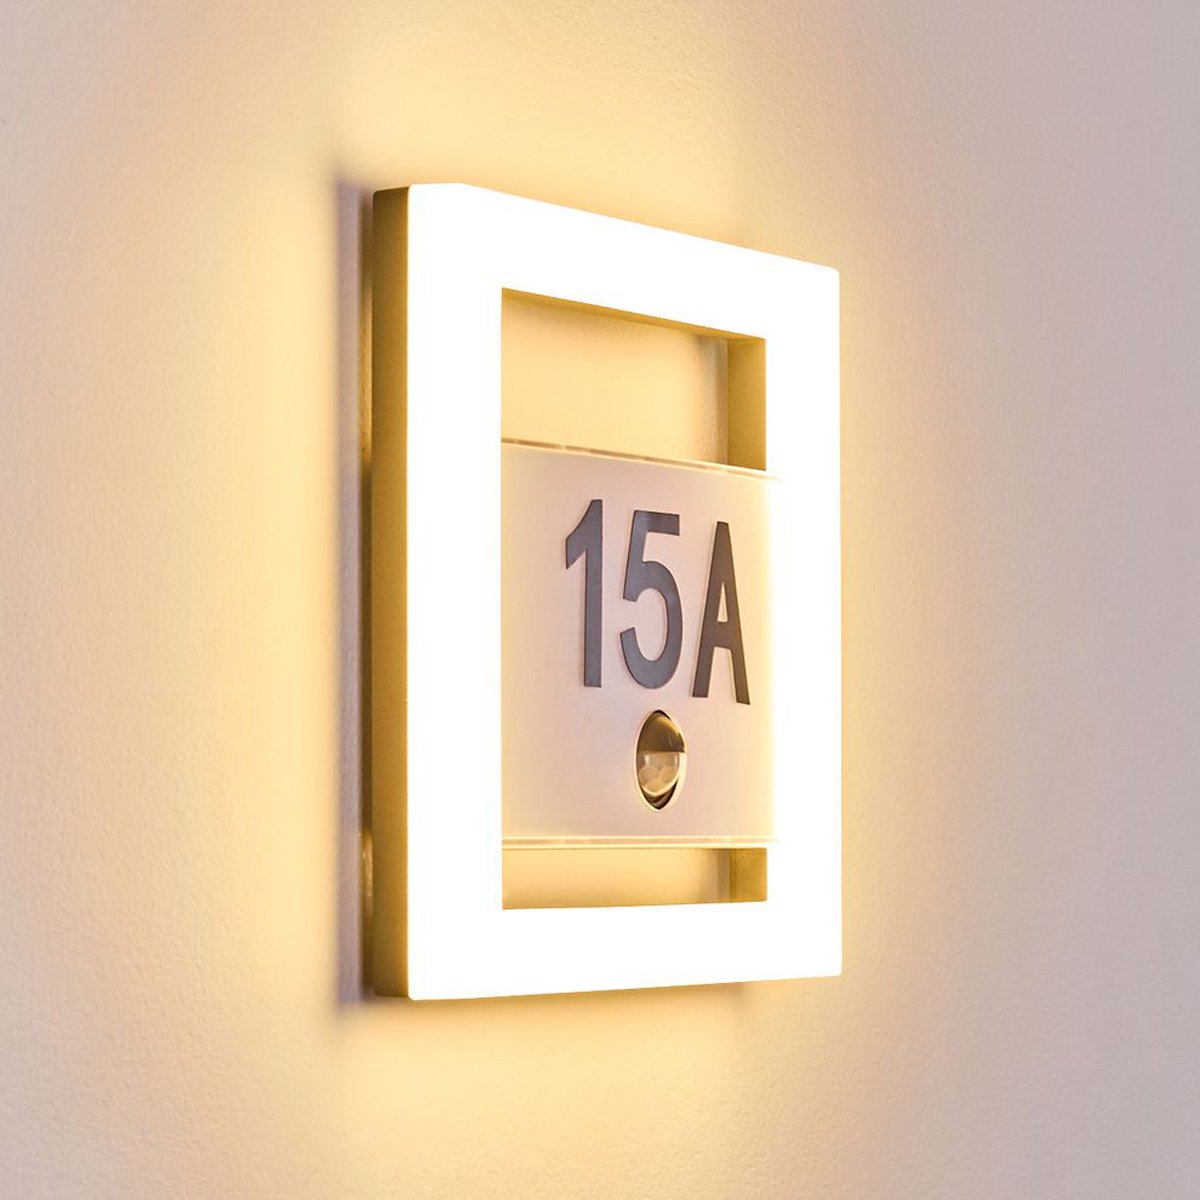 CGC PAMELA Halo Style House Number LED Light With Motion Sensor